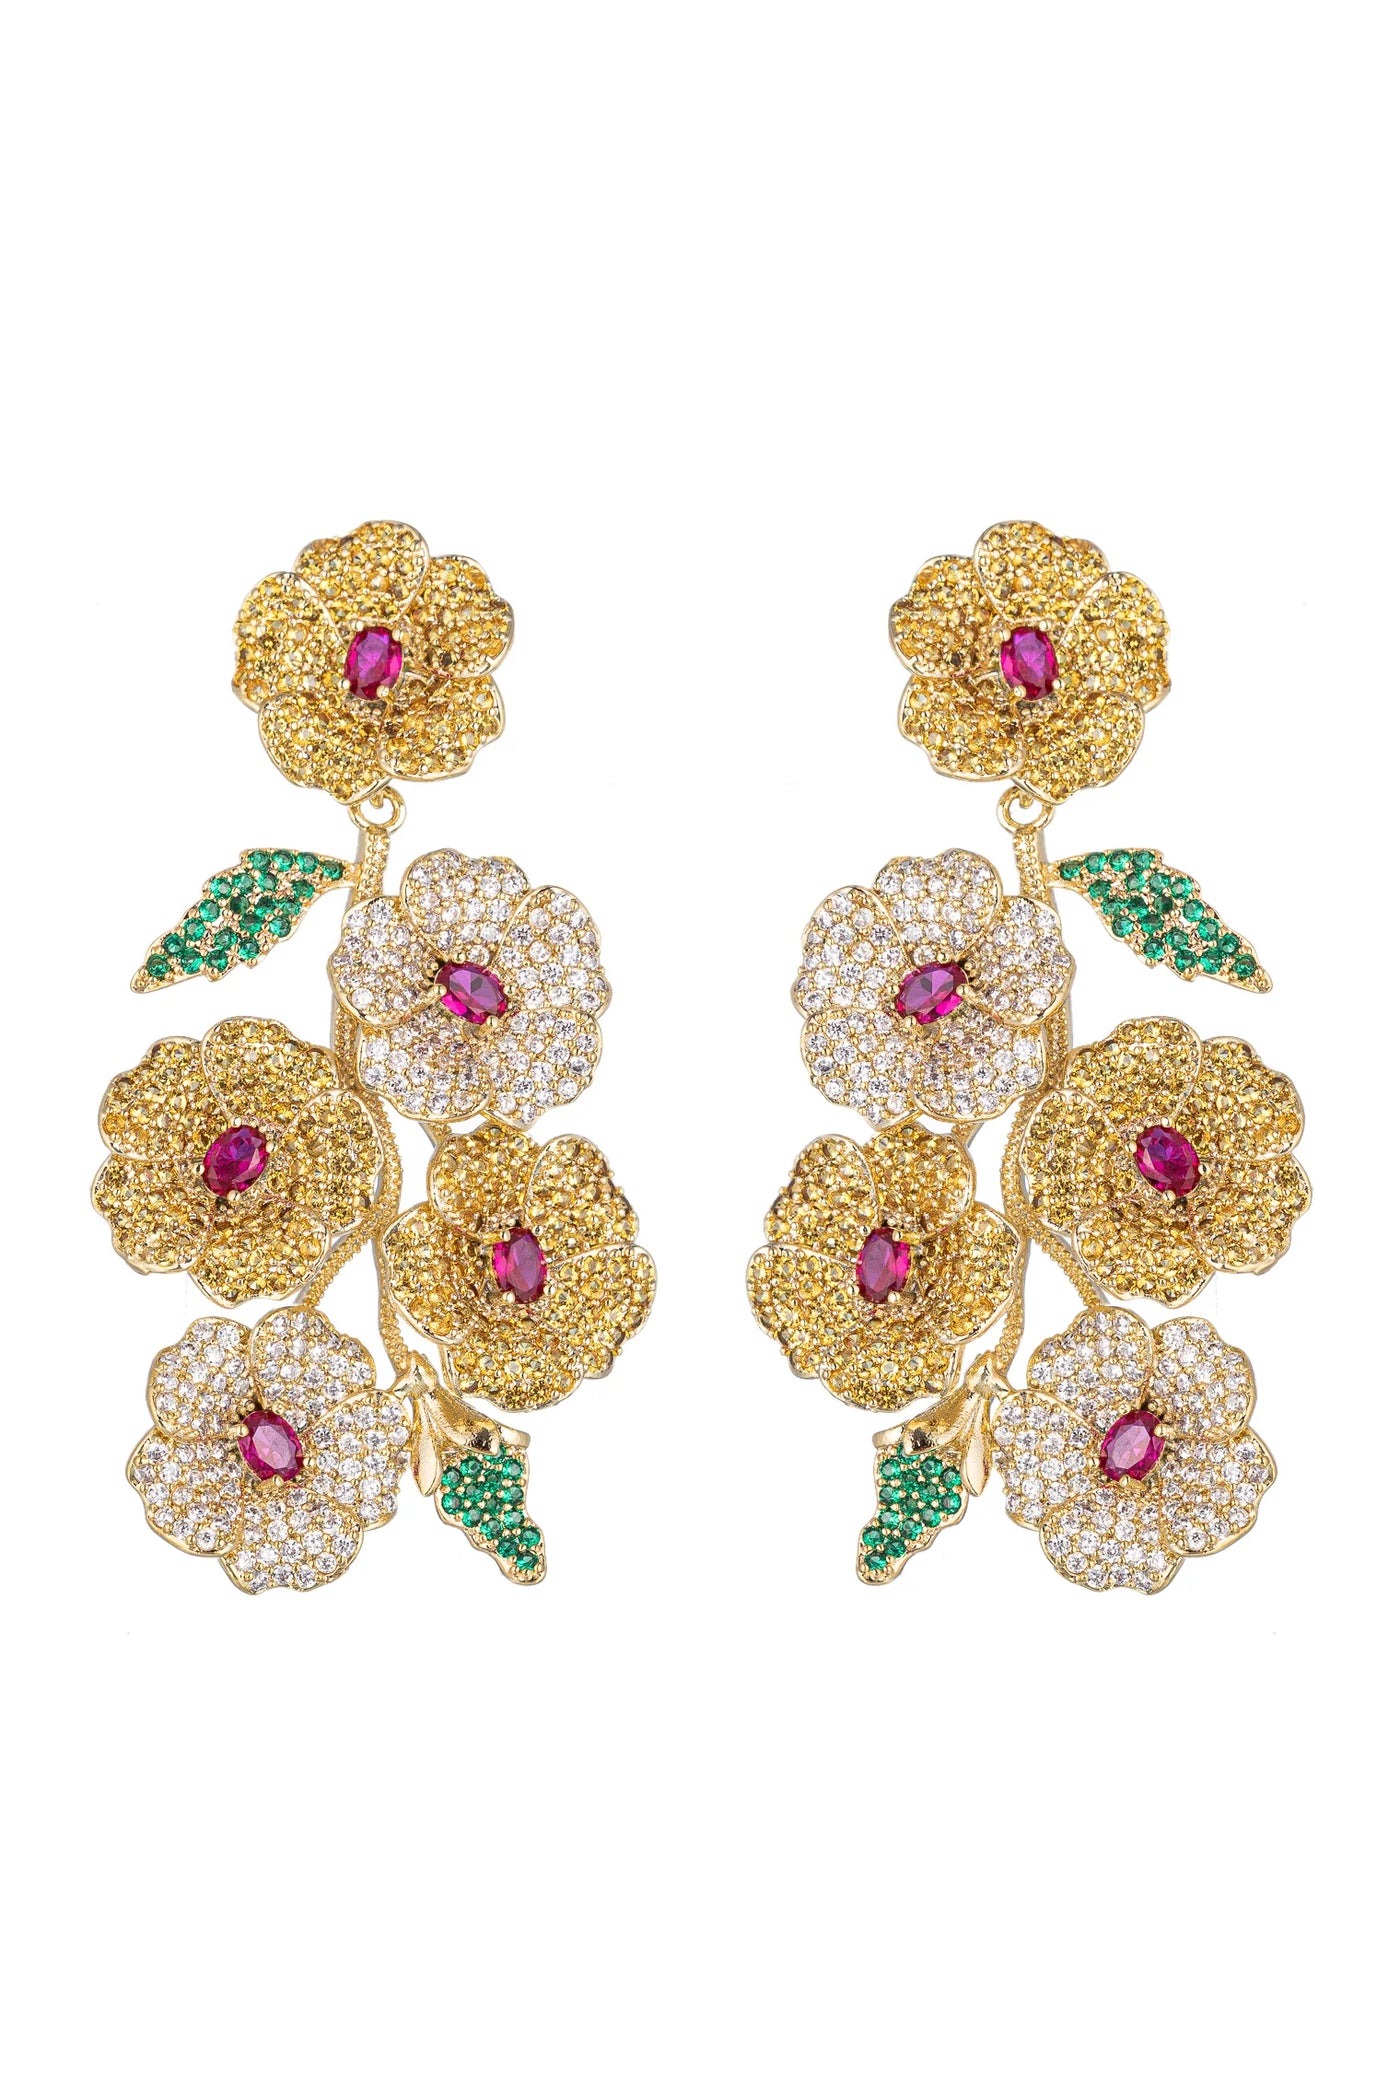 June Floral Earrings